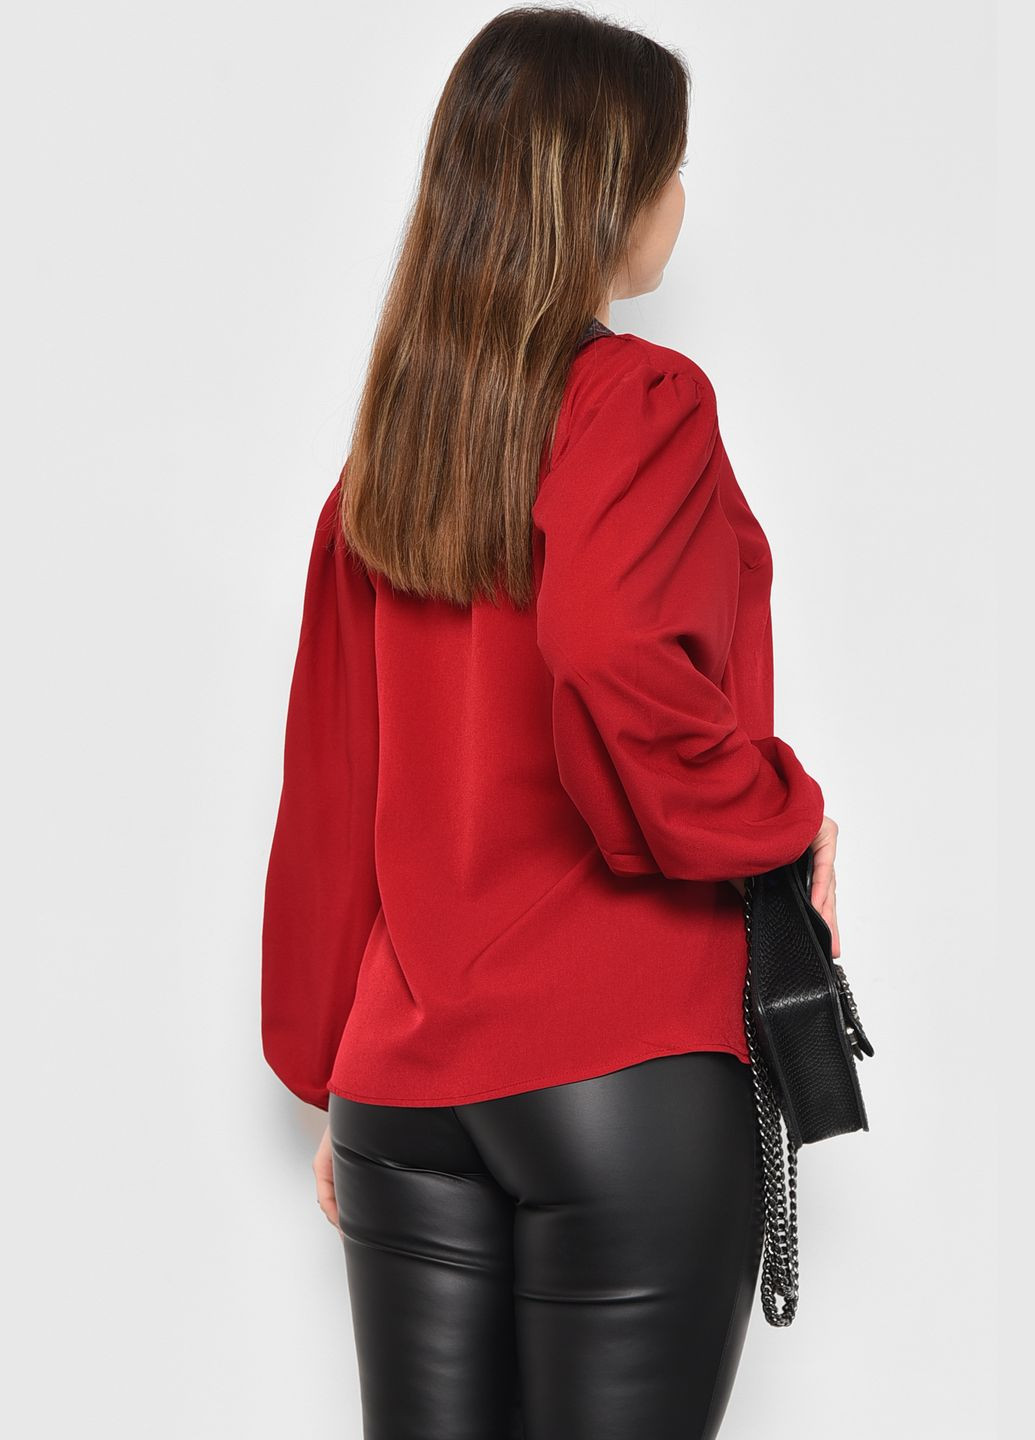 Бордова демісезонна блузка жіноча бордового кольору з баскою Let's Shop